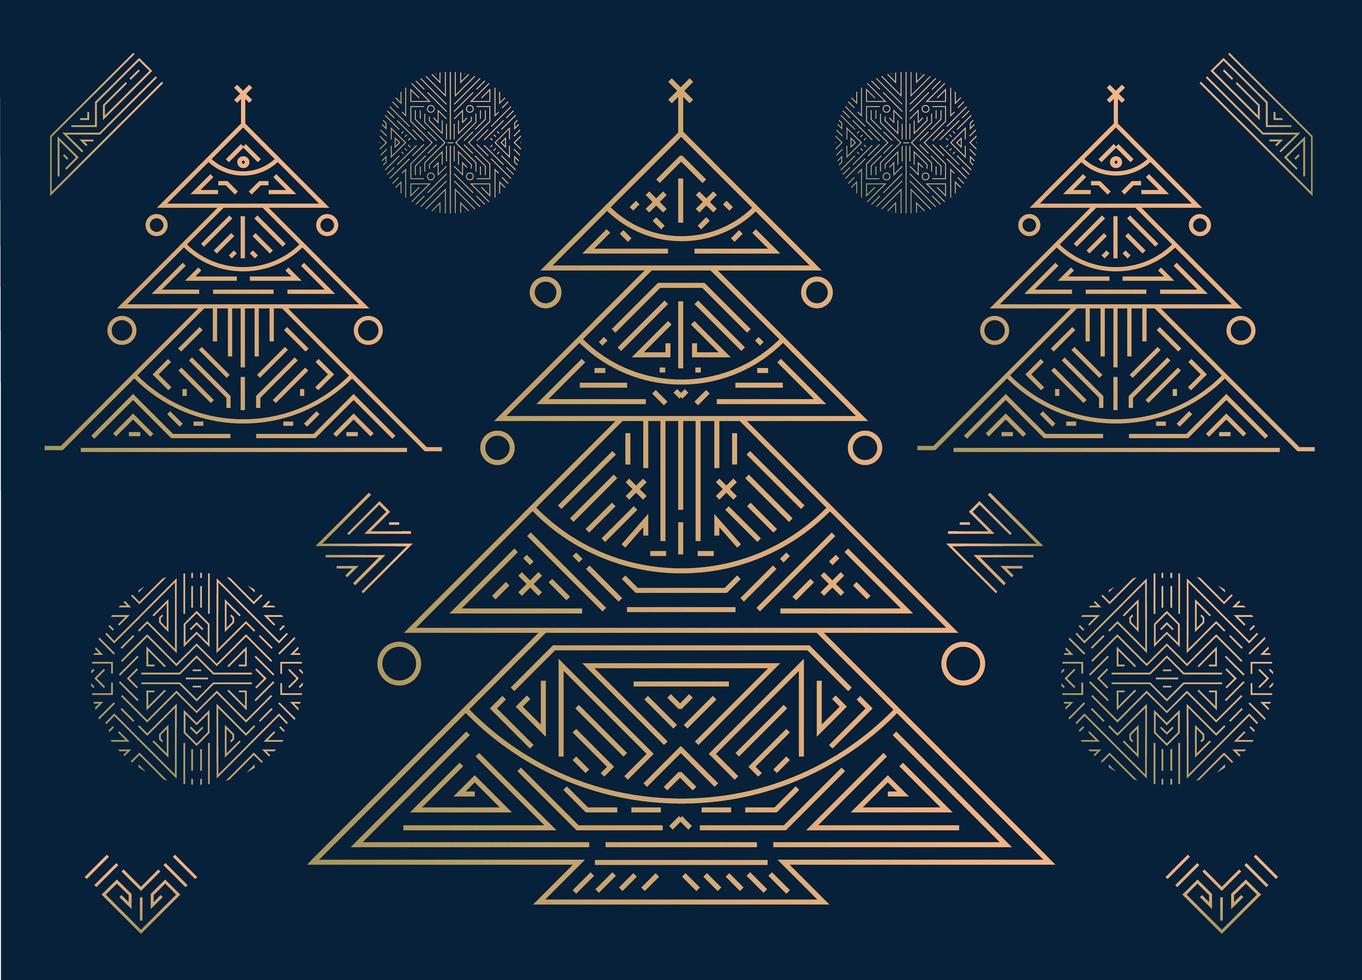 Vektor Frohe Weihnachten und ein glückliches neues Jahr goldene Grußkarte, Banner, Poster, Hintergrund. Art-Deco-geometrische Weihnachtskarte auf marineblauem Hintergrund. linearer glänzender Weihnachtsbaum